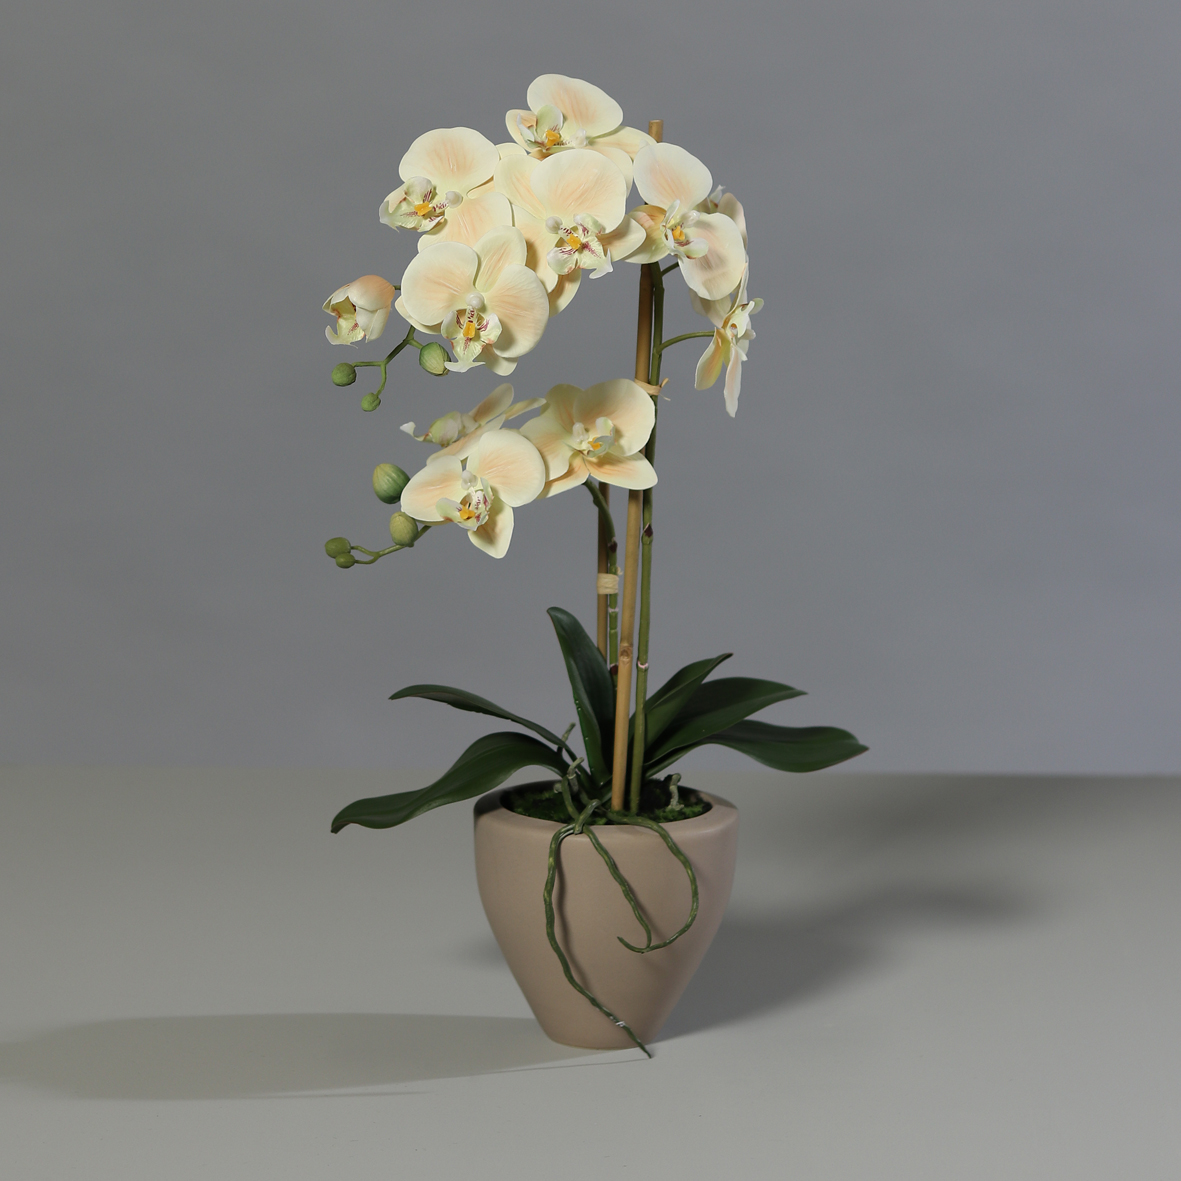 Orchidee Real Touch 62cm salmon im braunen Keramiktopf DP Kunstblumen künstliche Blumen